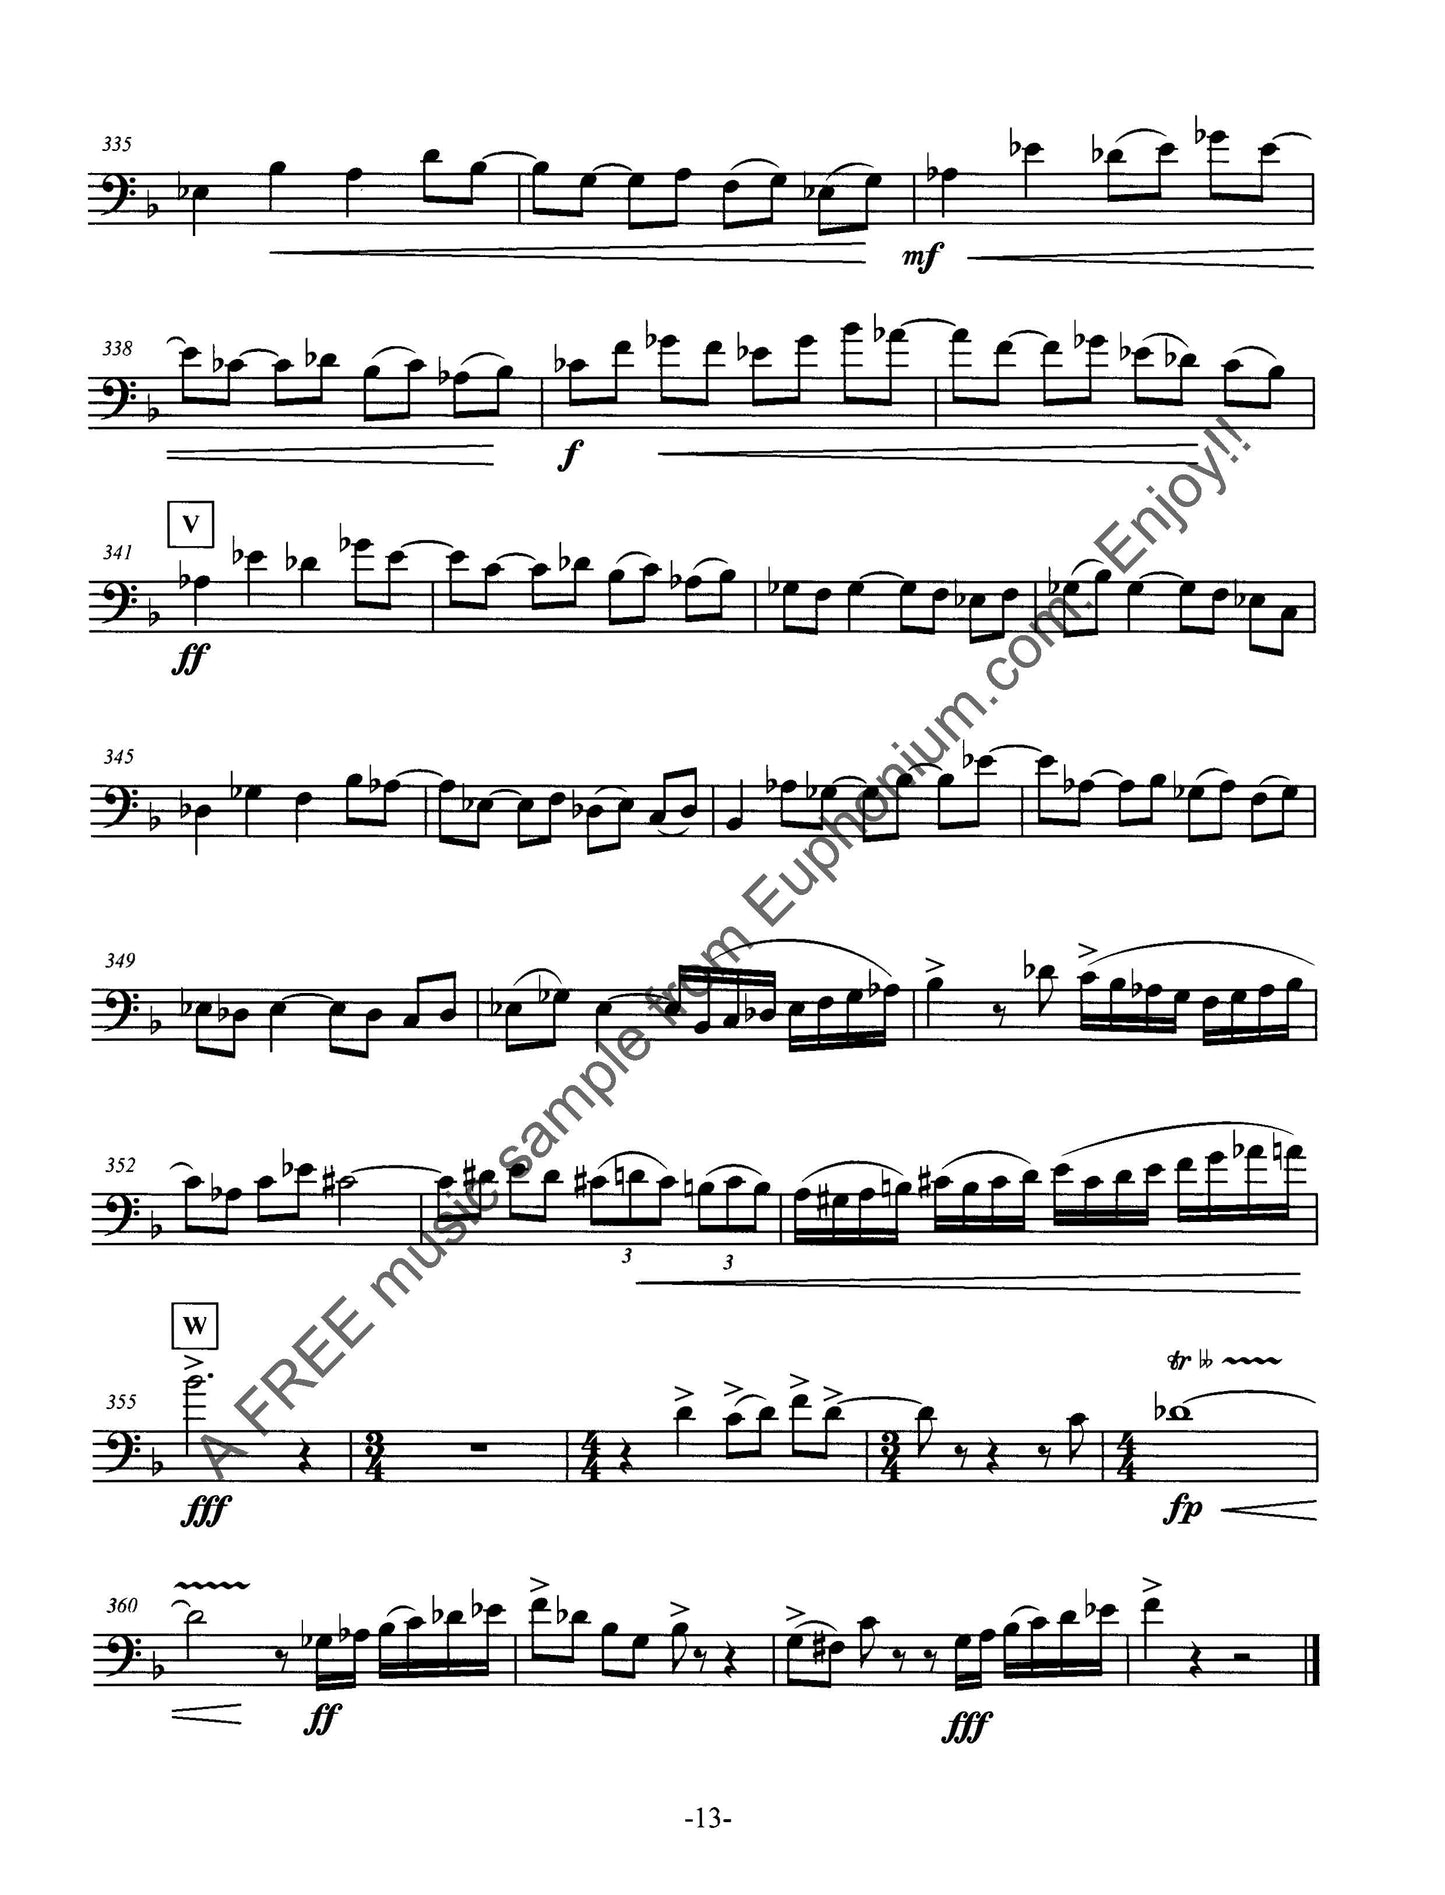 Brusick - Concerto for Euphonium - DOWNLOAD